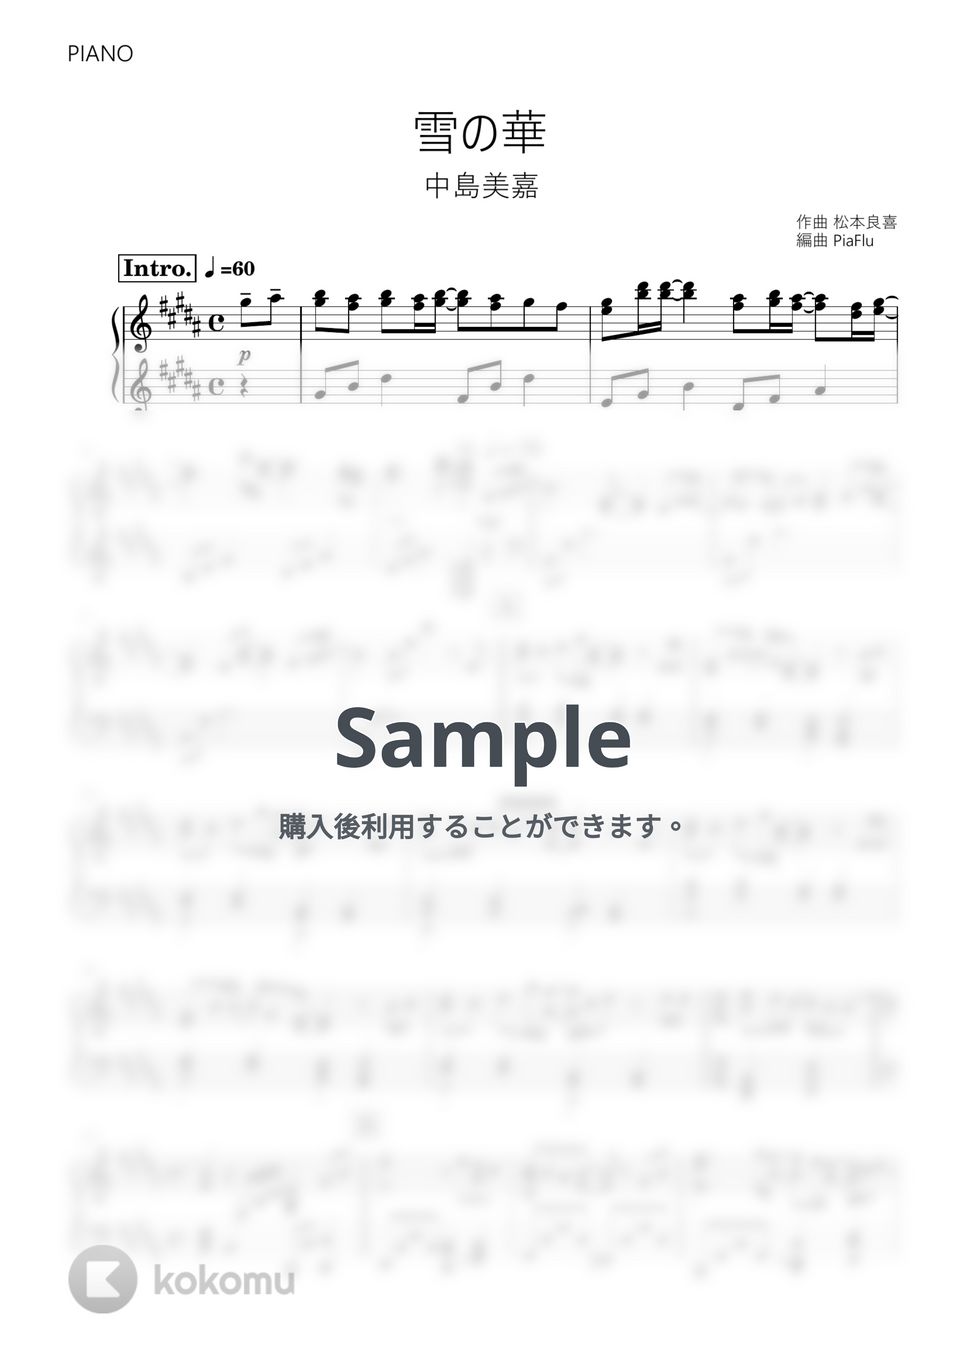 中島美嘉 - 雪の華 (ピアノ) by PiaFlu